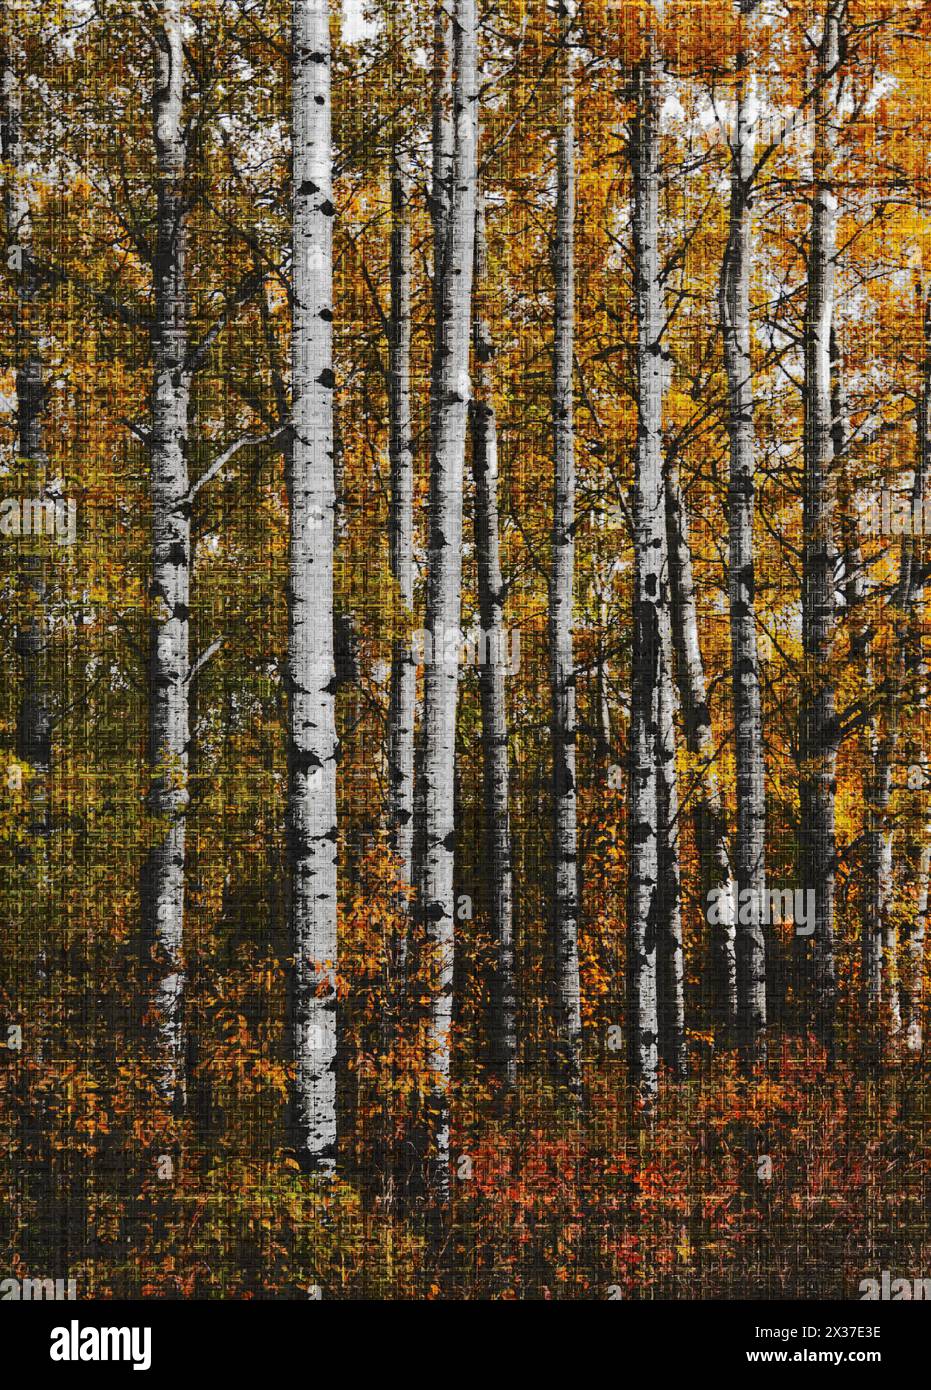 Vertikale Bäume in Herbstfarben mit einem kunstvollen Effekt, der den wunderschönen Herbst unterstreicht Stockfoto